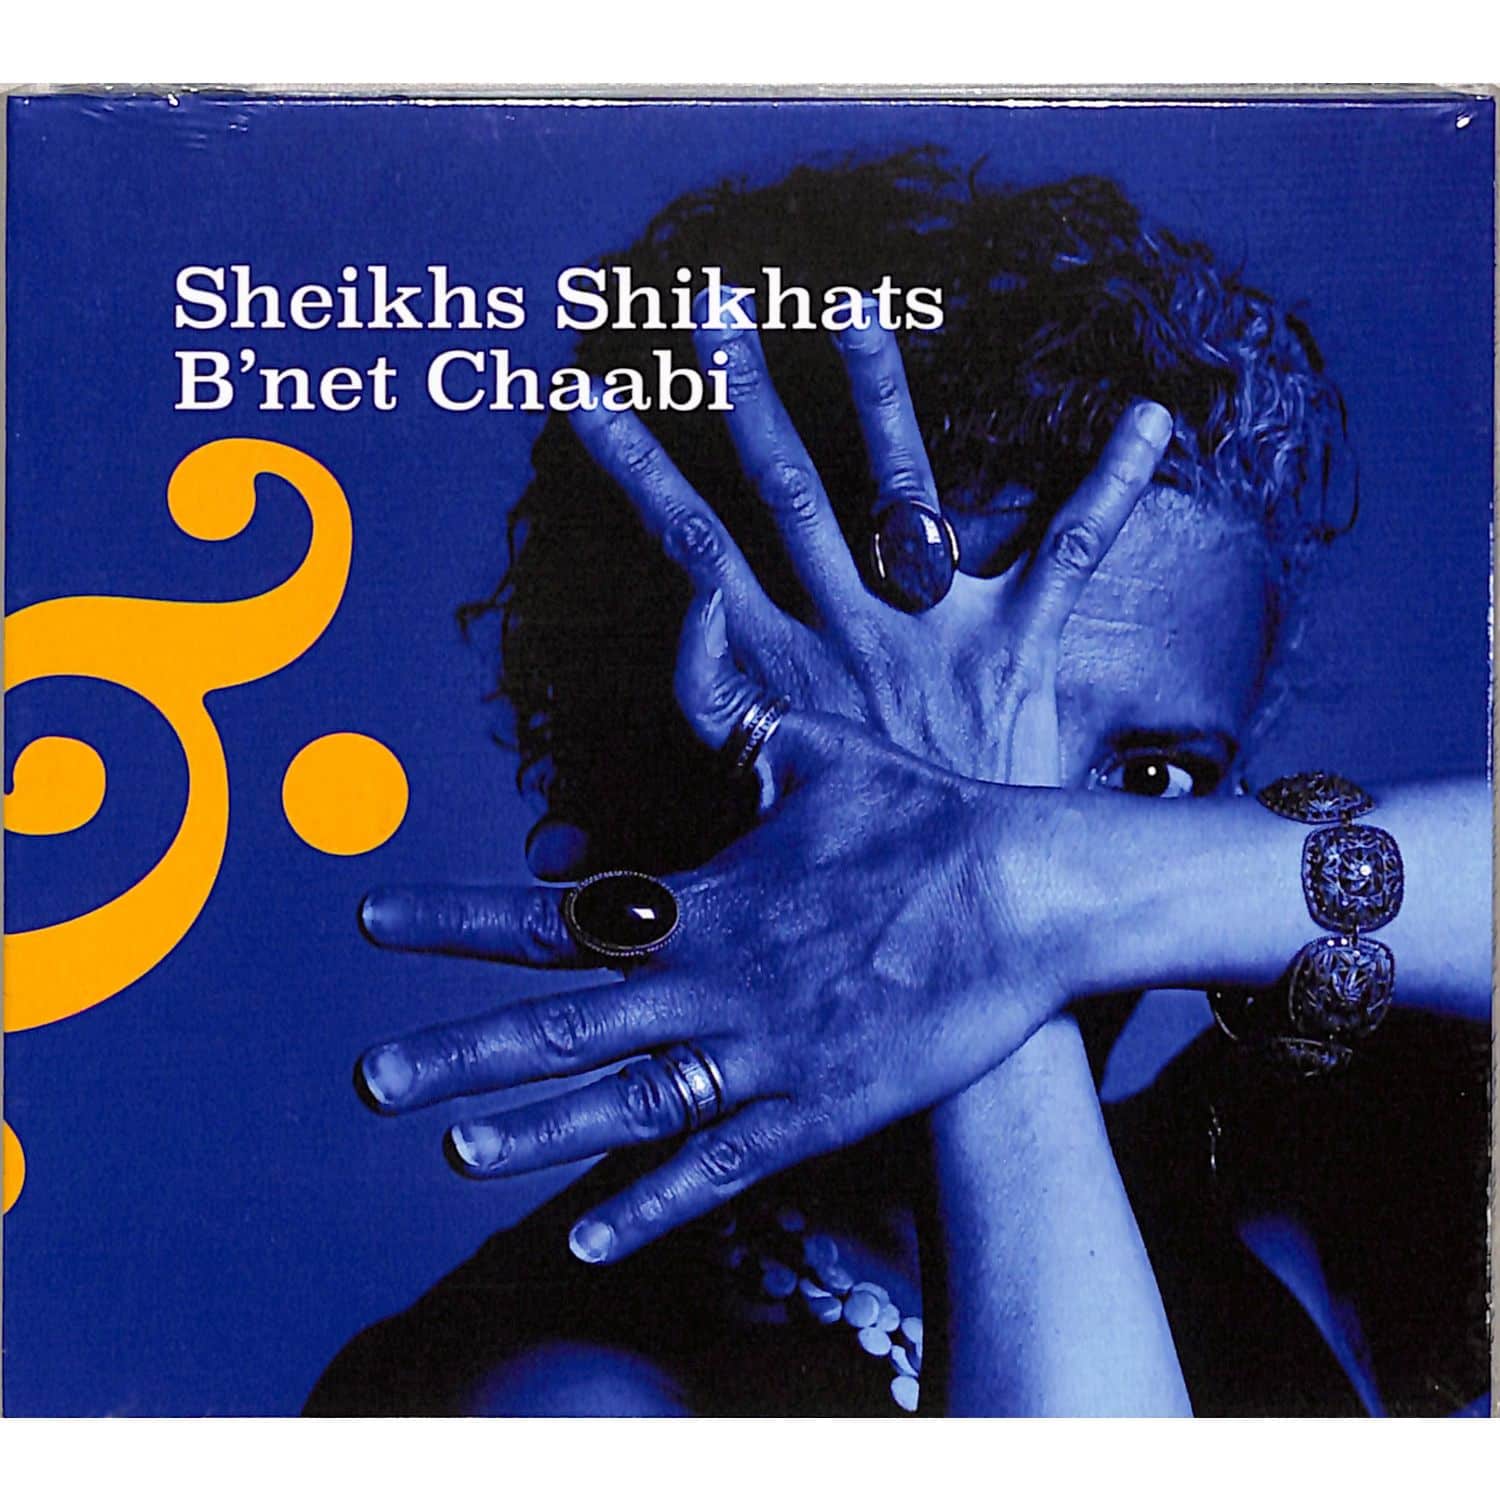 Sheikhs Shikhats & B net Chaabi - SHEIKHS SHIKHATS & BNET CHAABI 